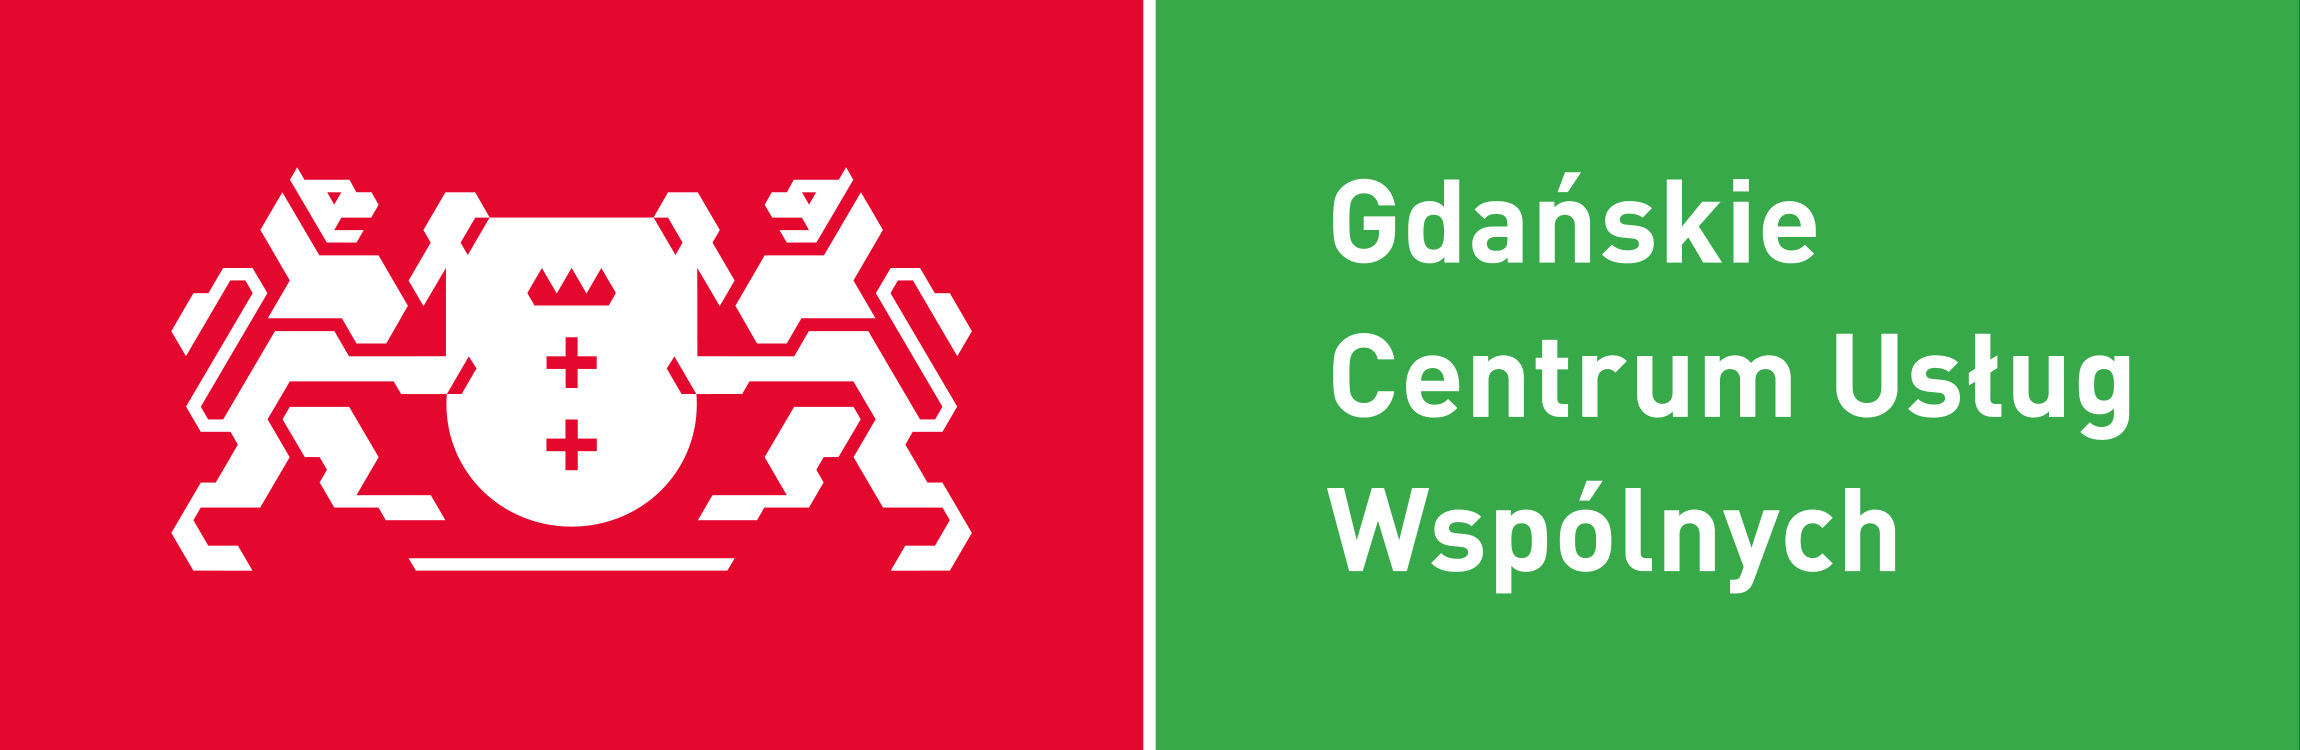 Gdańskie Centrum Usług Wspólnych logo